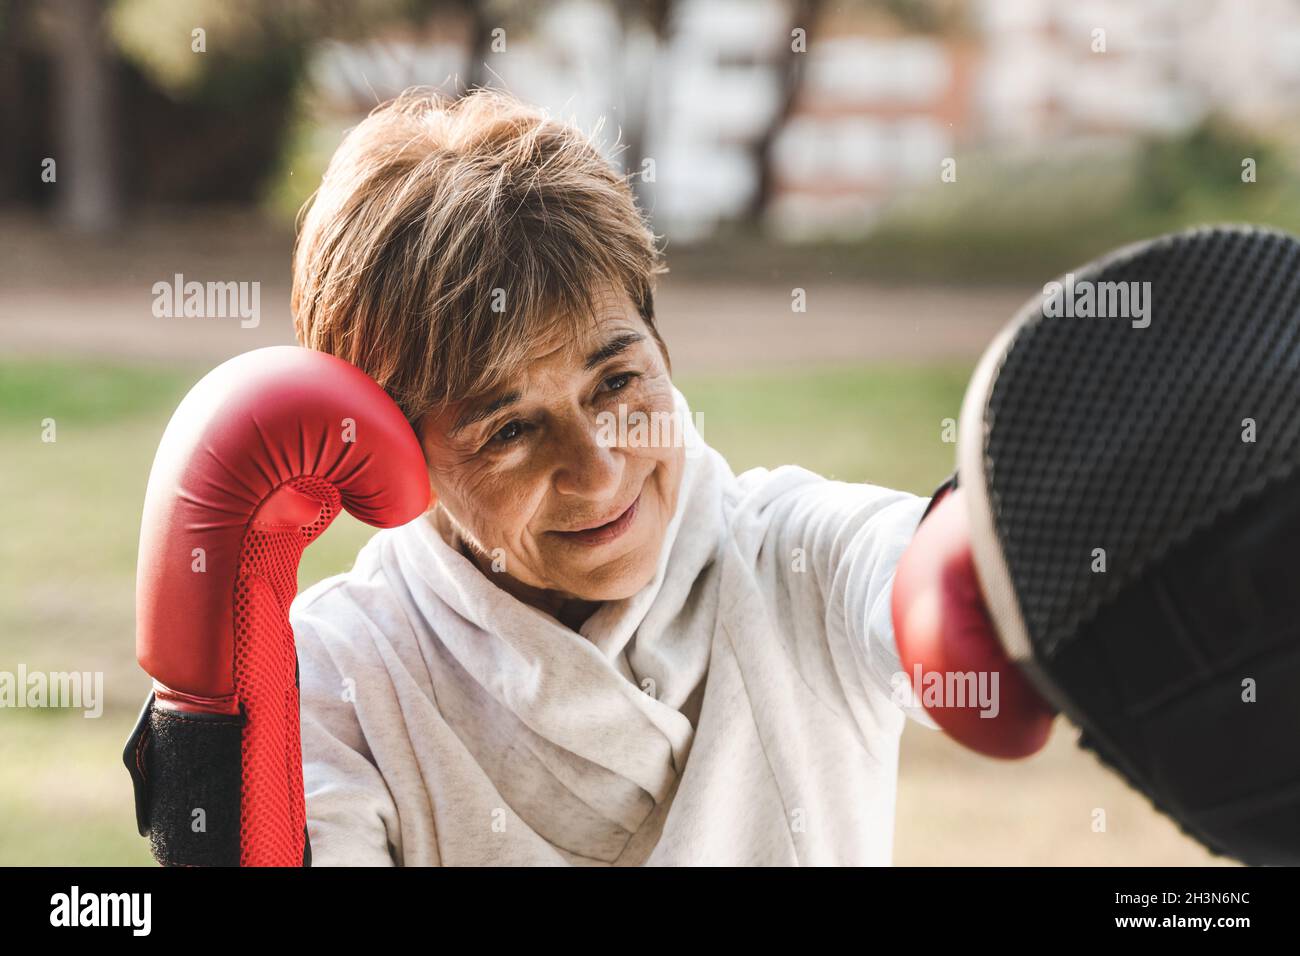 Ältere Frau, die im Stadtpark mit einem persönlichen Trainer ein Boxtraining macht - Fokus auf das Gesicht Stockfoto